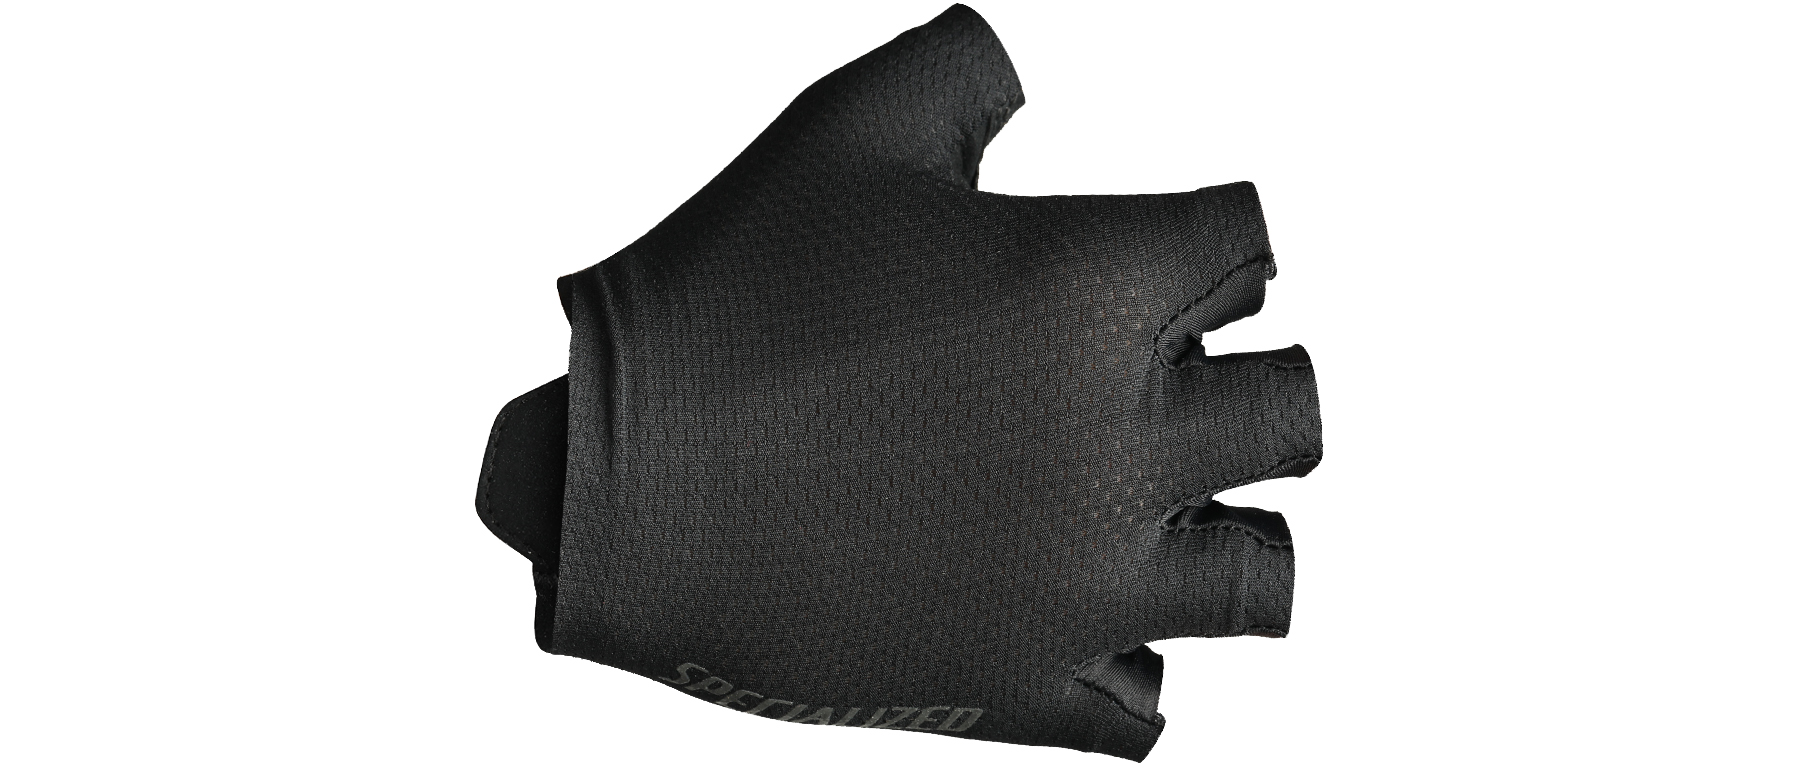 Specialized SL Pro Glove